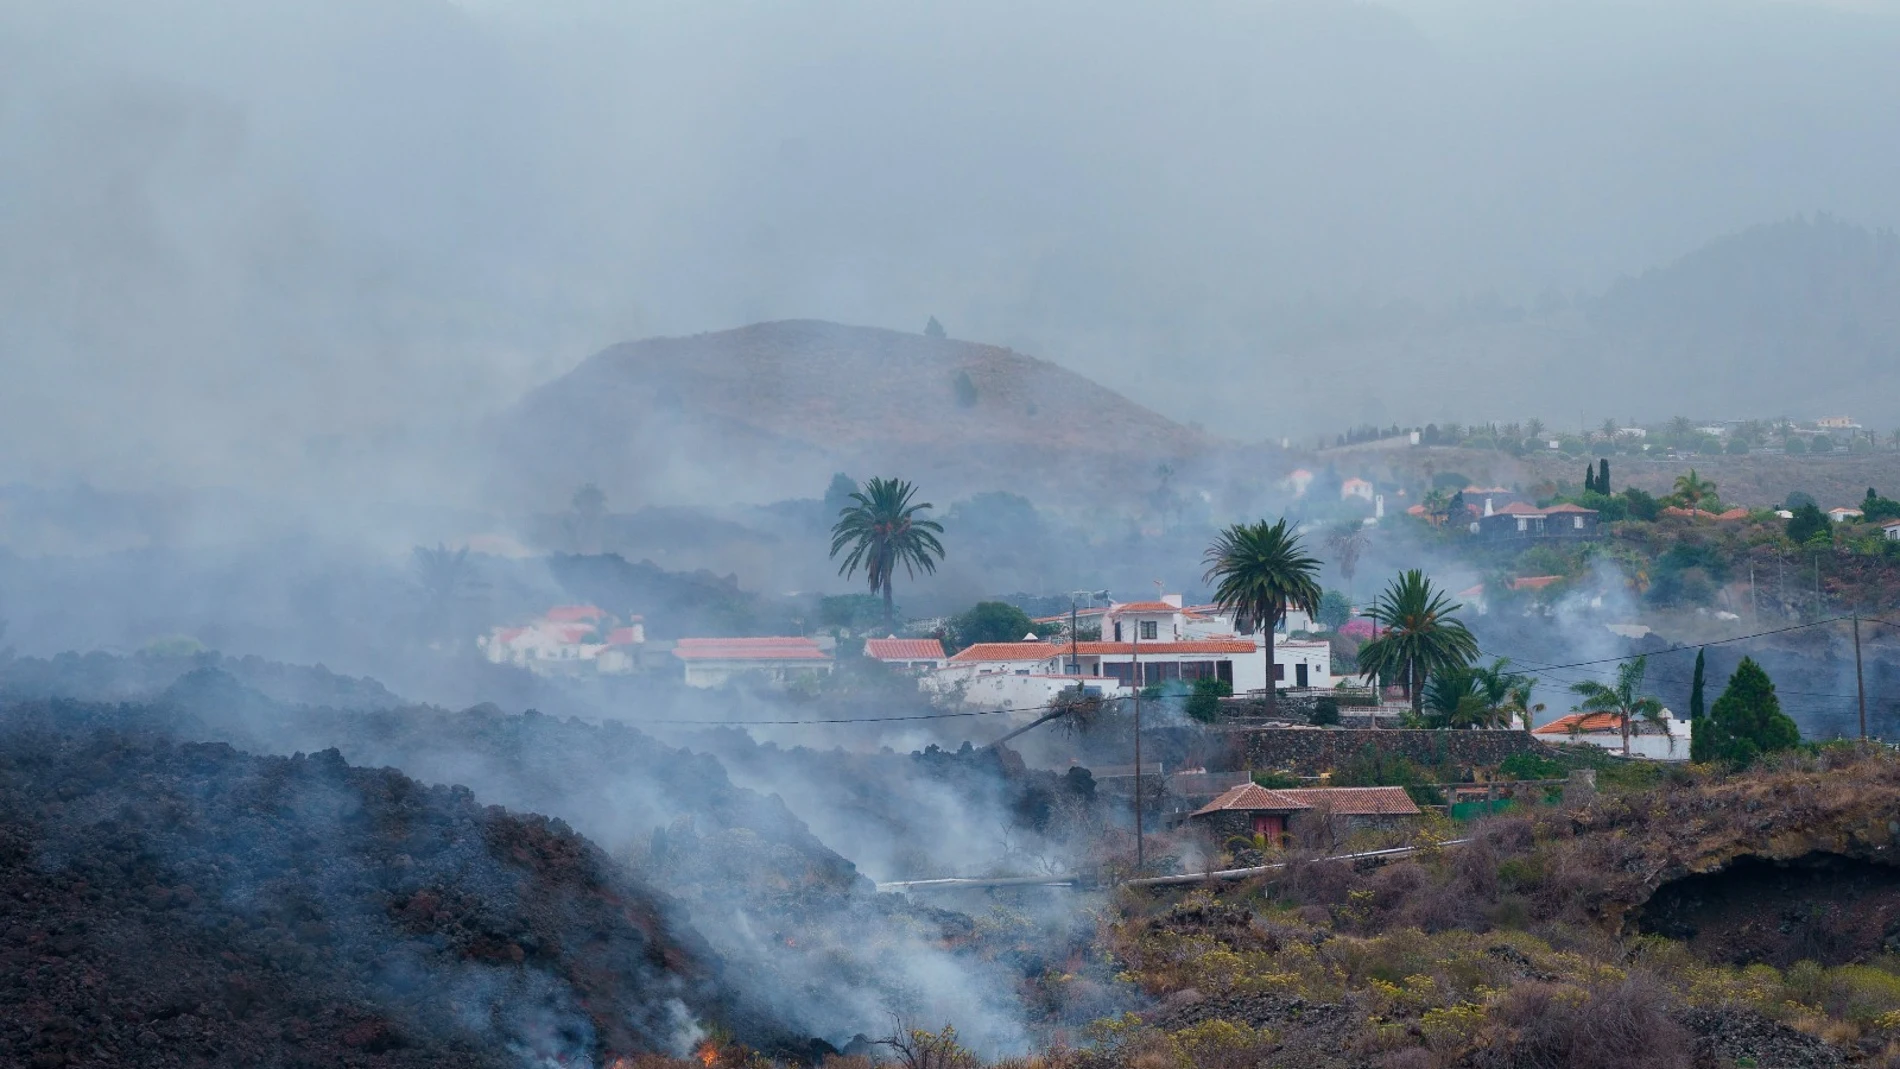 laSexta Noticias 20:00 (21-09-21) Erupción en La Palma: la lava llega al núcleo urbano de Todoque, último punto antes del mar